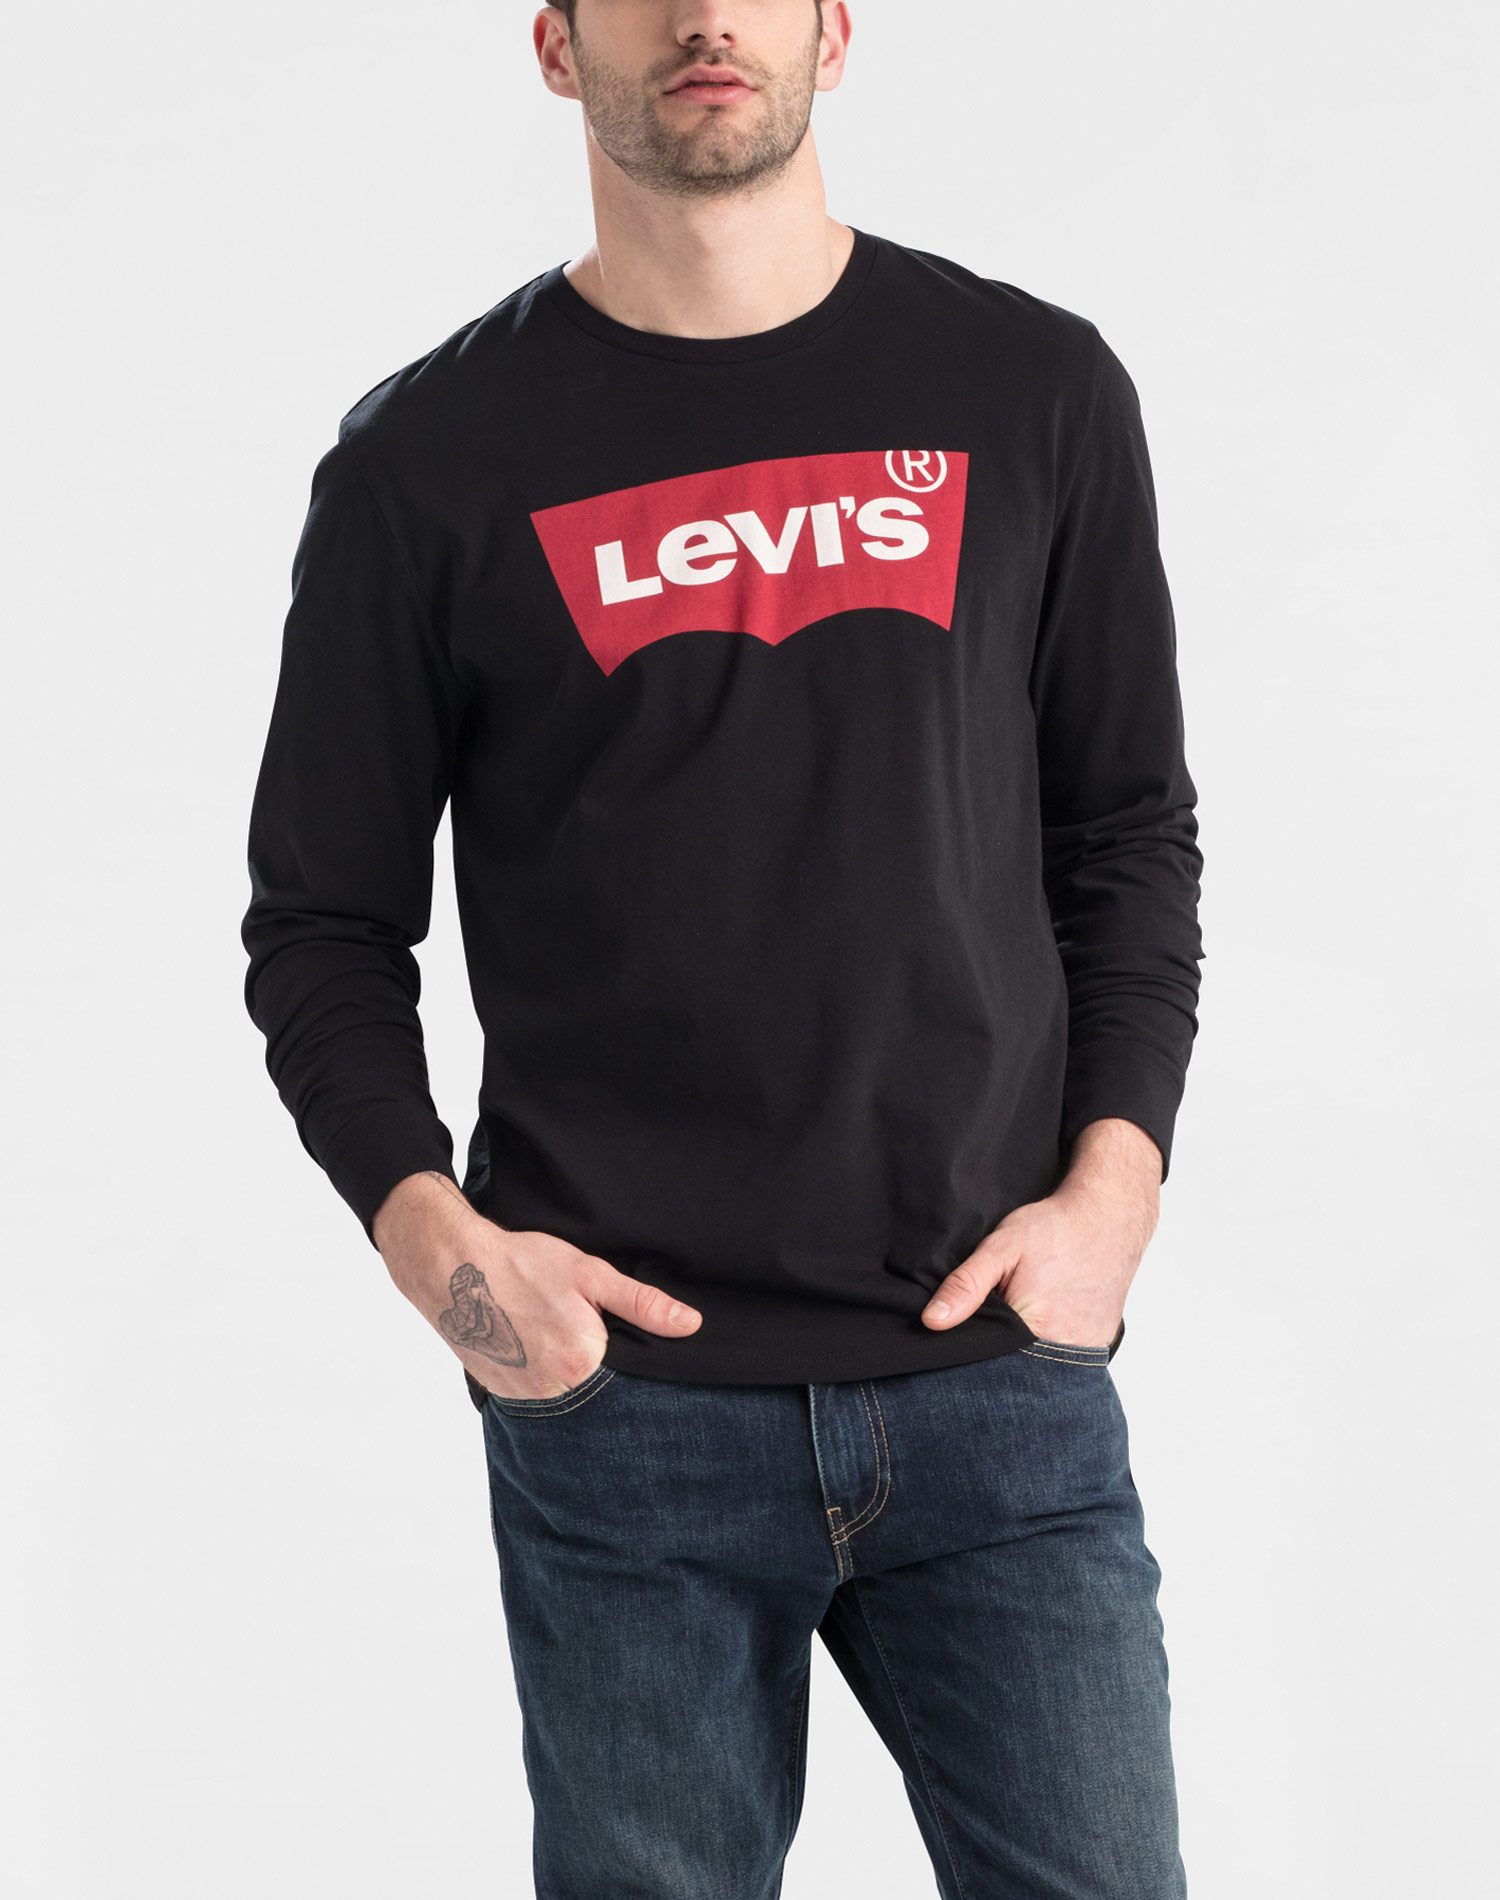 Levi's samarreta d'home de m/ll 36015-0013 negra